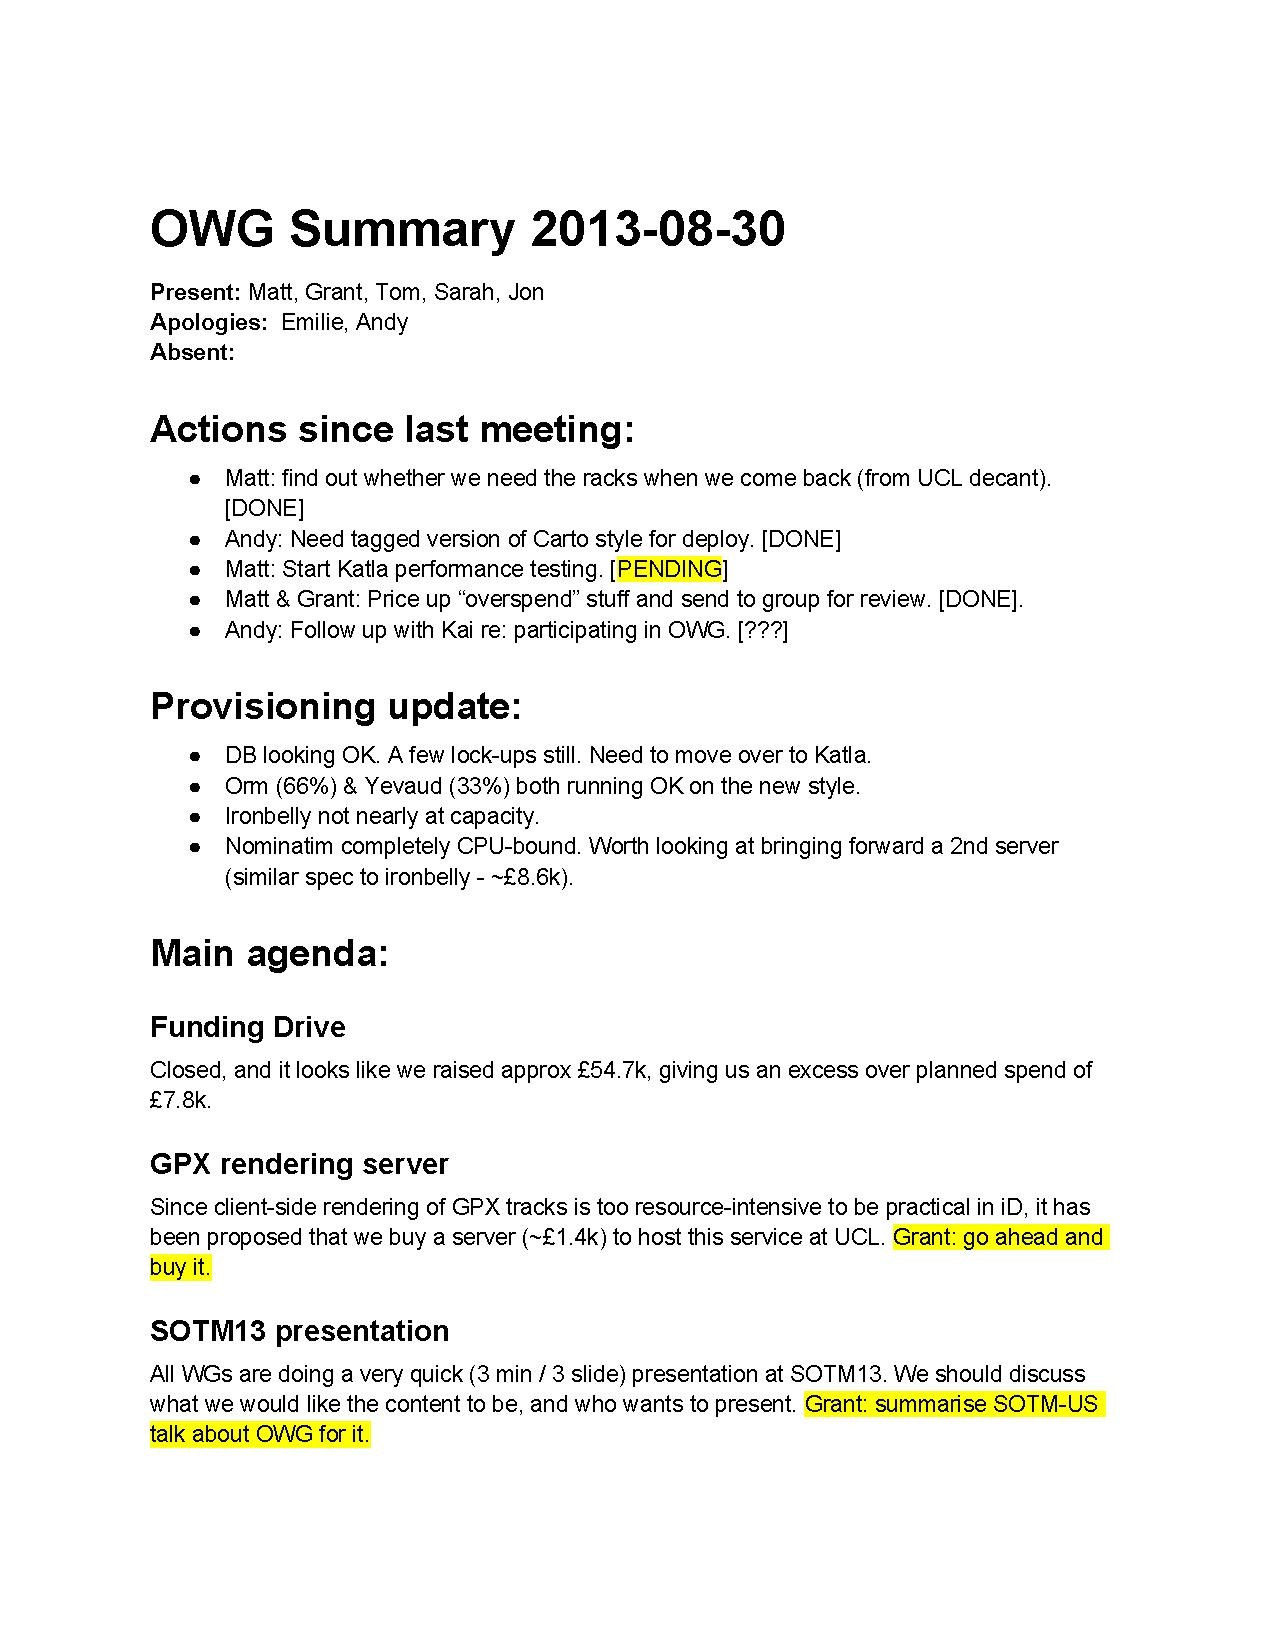 OWG Summary 2013-08-30.pdf